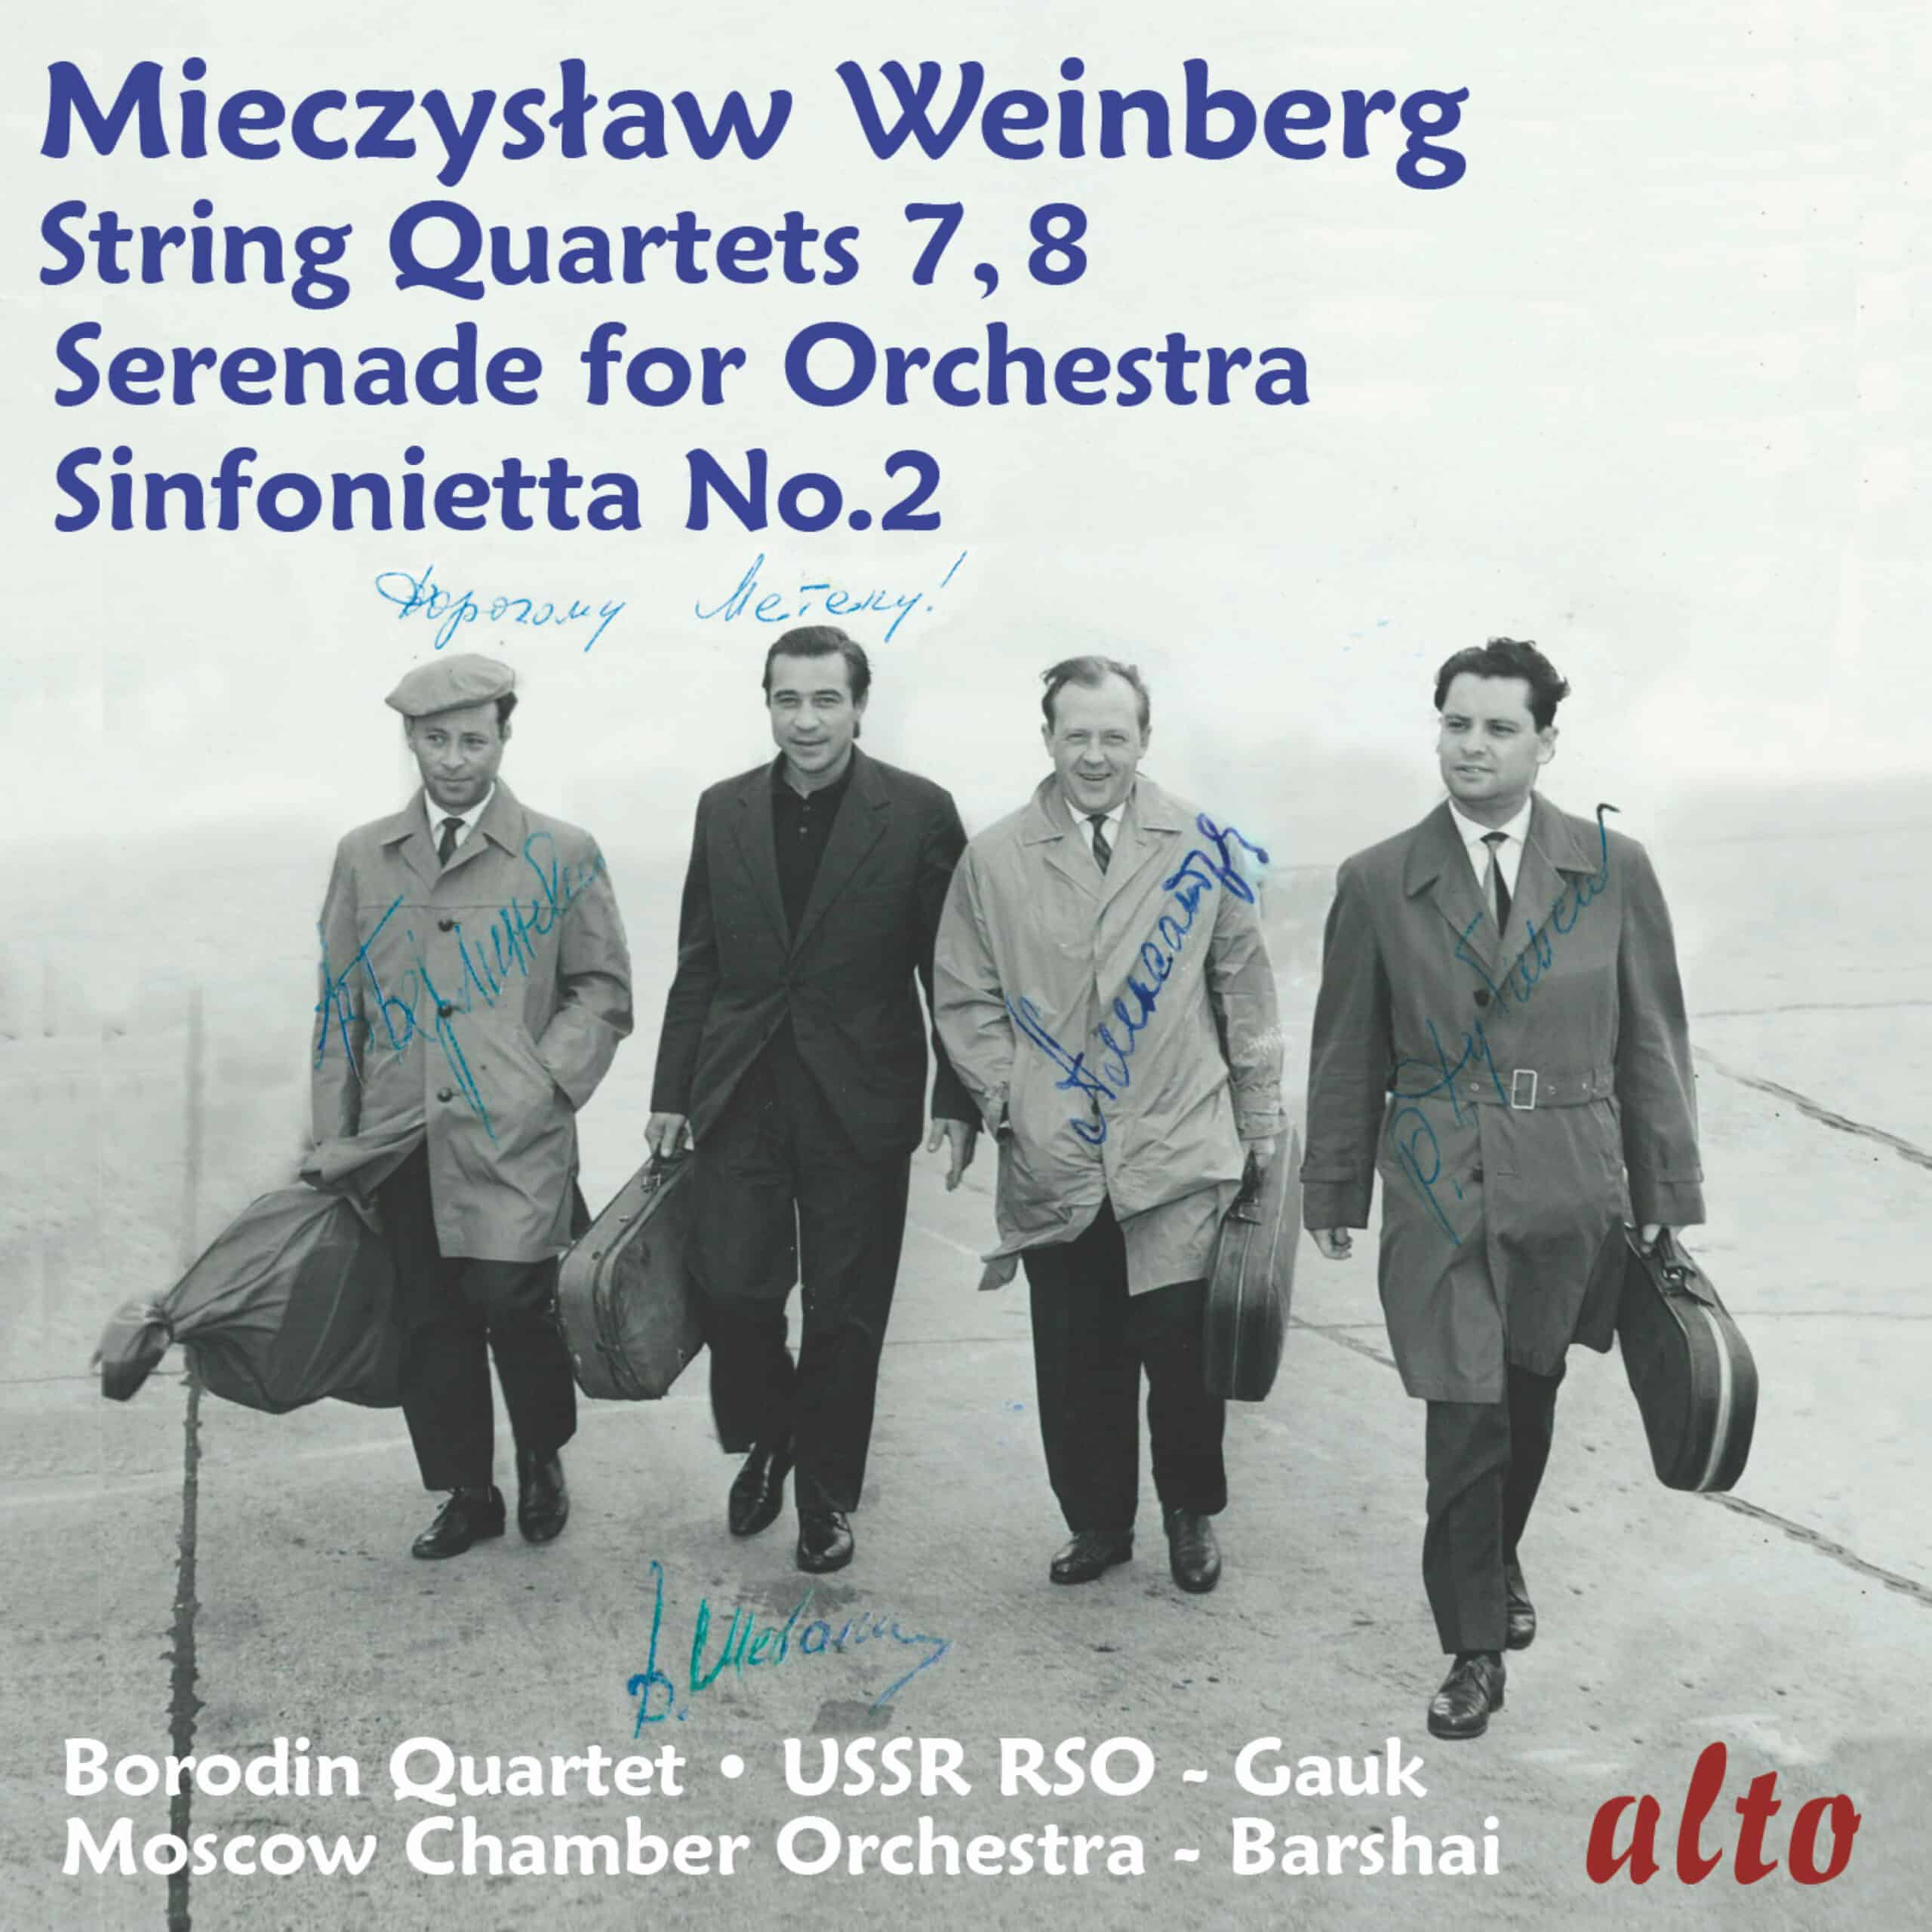 Mieczystaw Weinberg: String Quartets Nos. 7 & 8, Serenade for Orchestra, Sinfonietta No. 2